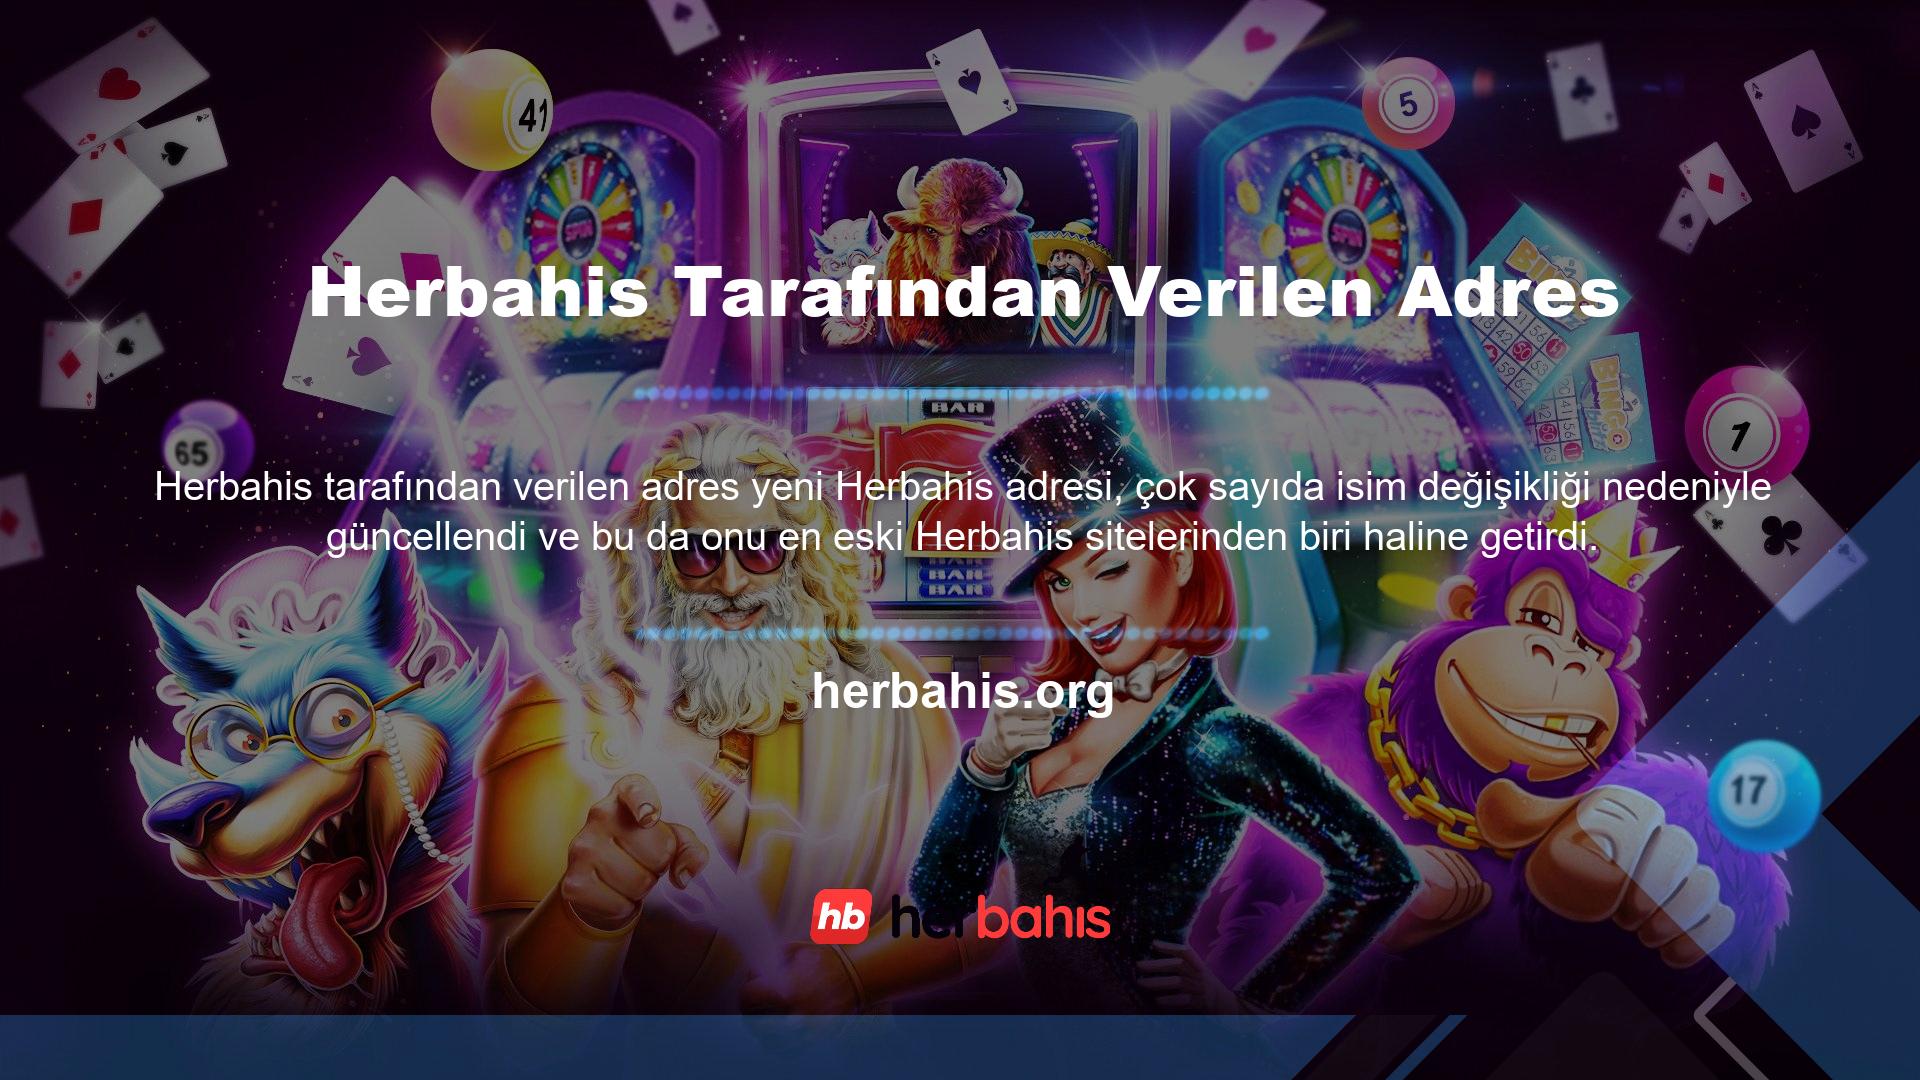 Bugün Türk web sitesi Herbahis, adresini farklı bir isim yerine Herbahis olarak değiştirdi